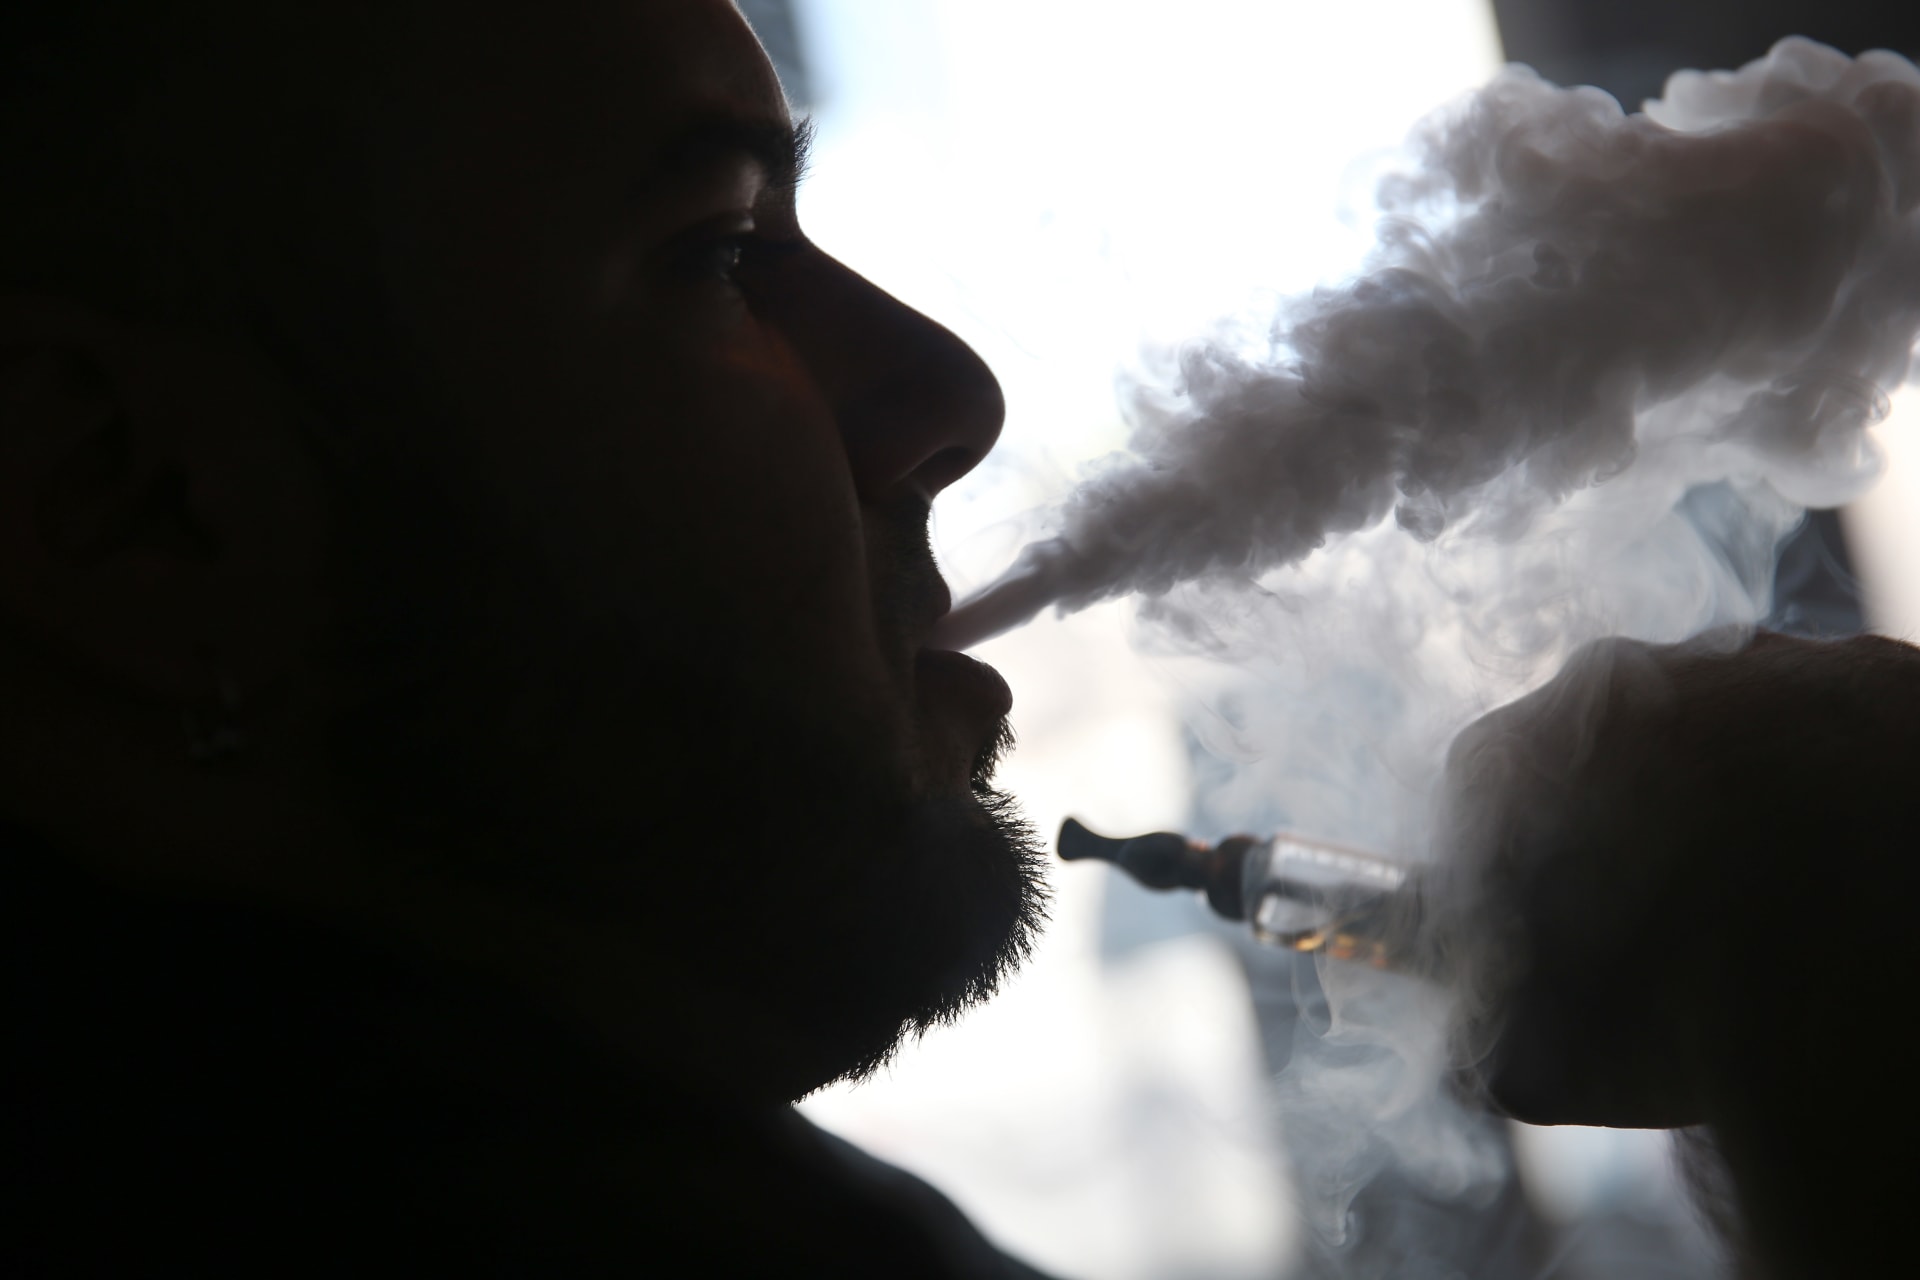 تقرير: لا يوجد ماركة واحدة لعلاقة السجائر الإلكترونية بإصابة الرئة